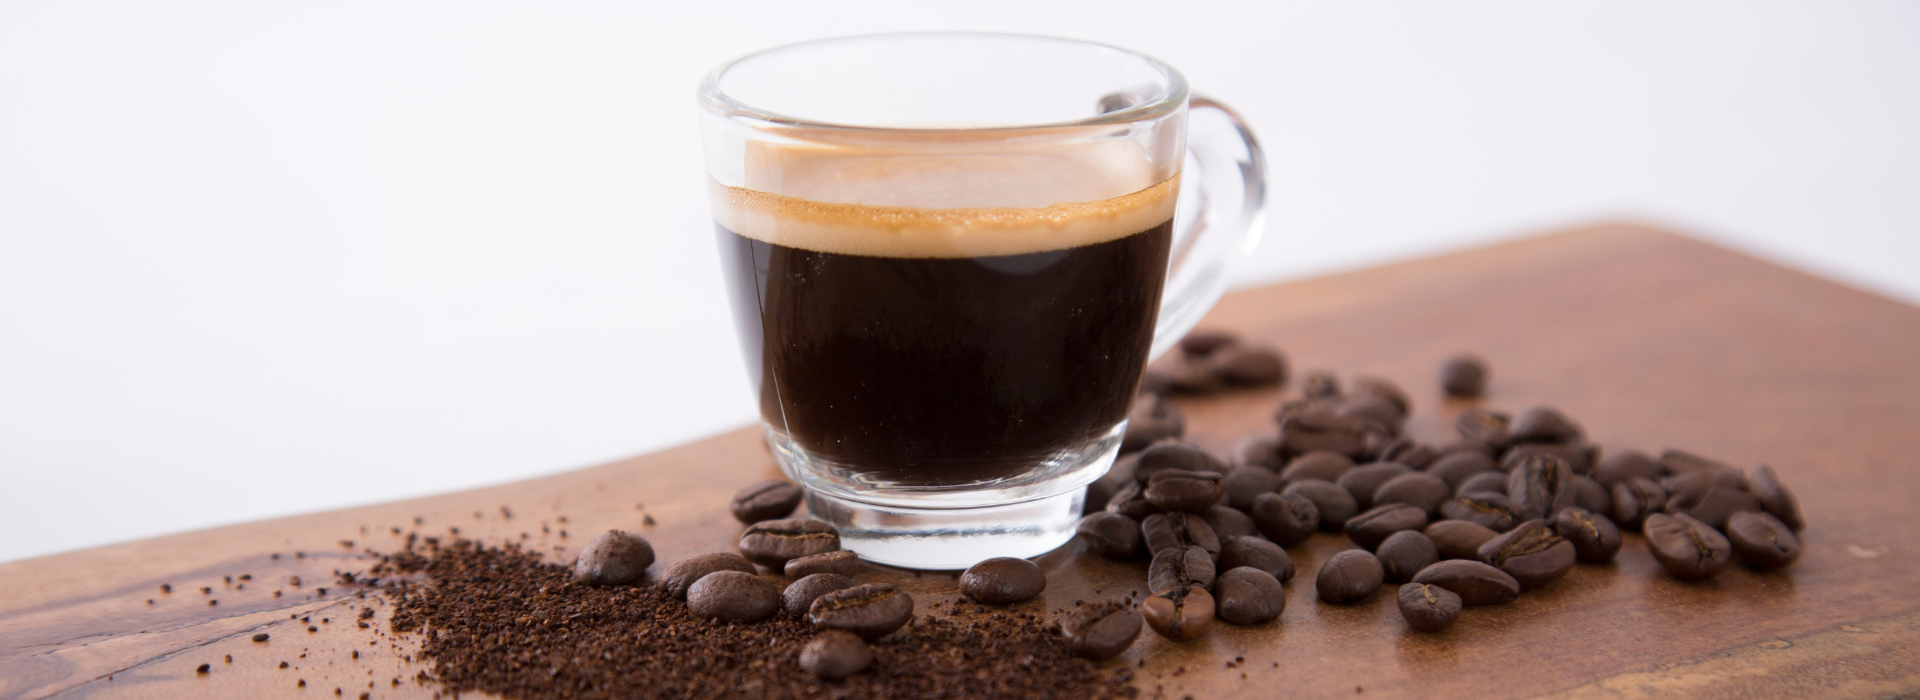 Il caffè decaffeinato: tutto quello che c’è da sapere